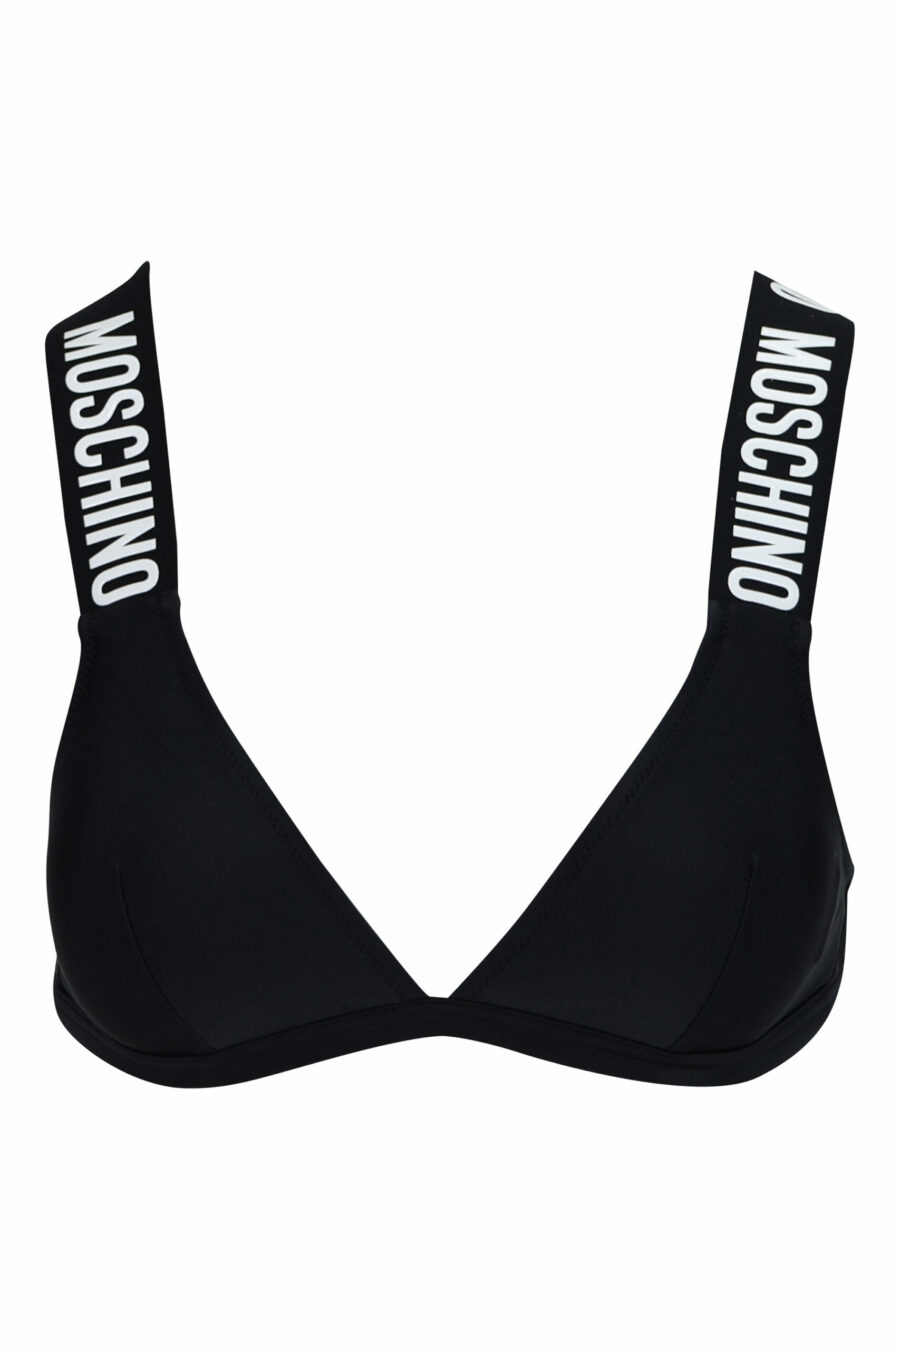 Top de bikini negro con logo blanco en tiras - 667113646978 scaled